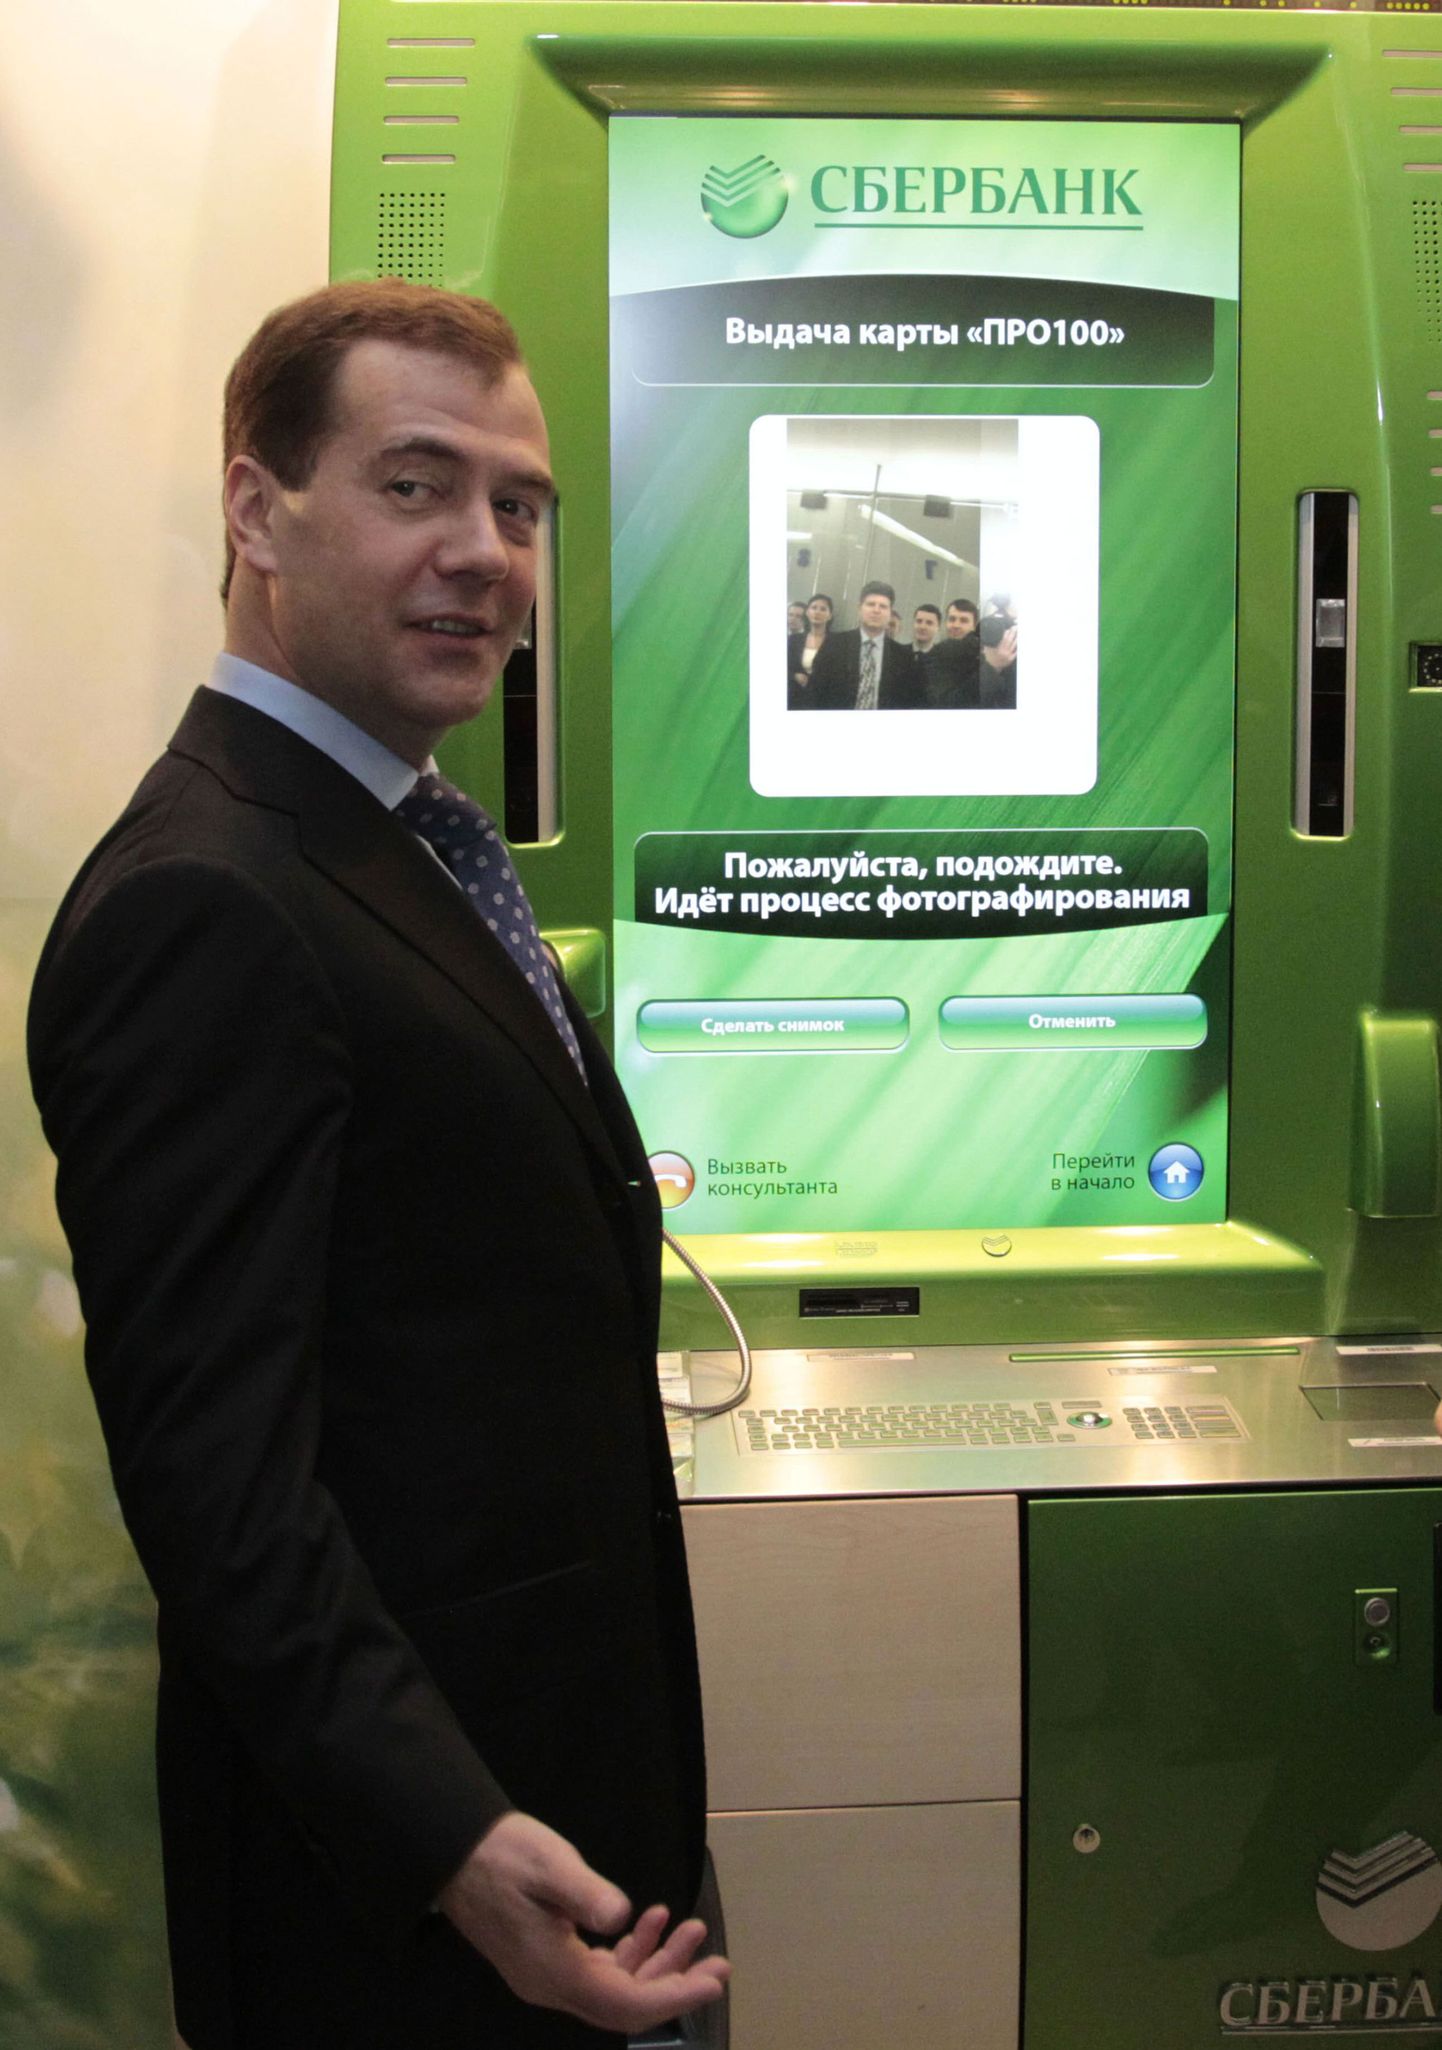 Президент России Дмитрий Медведев на презентации терминала Сбербанка по выдаче универсальной карты "Про100" для осуществления различных платежей. Снимок иллюстративный.